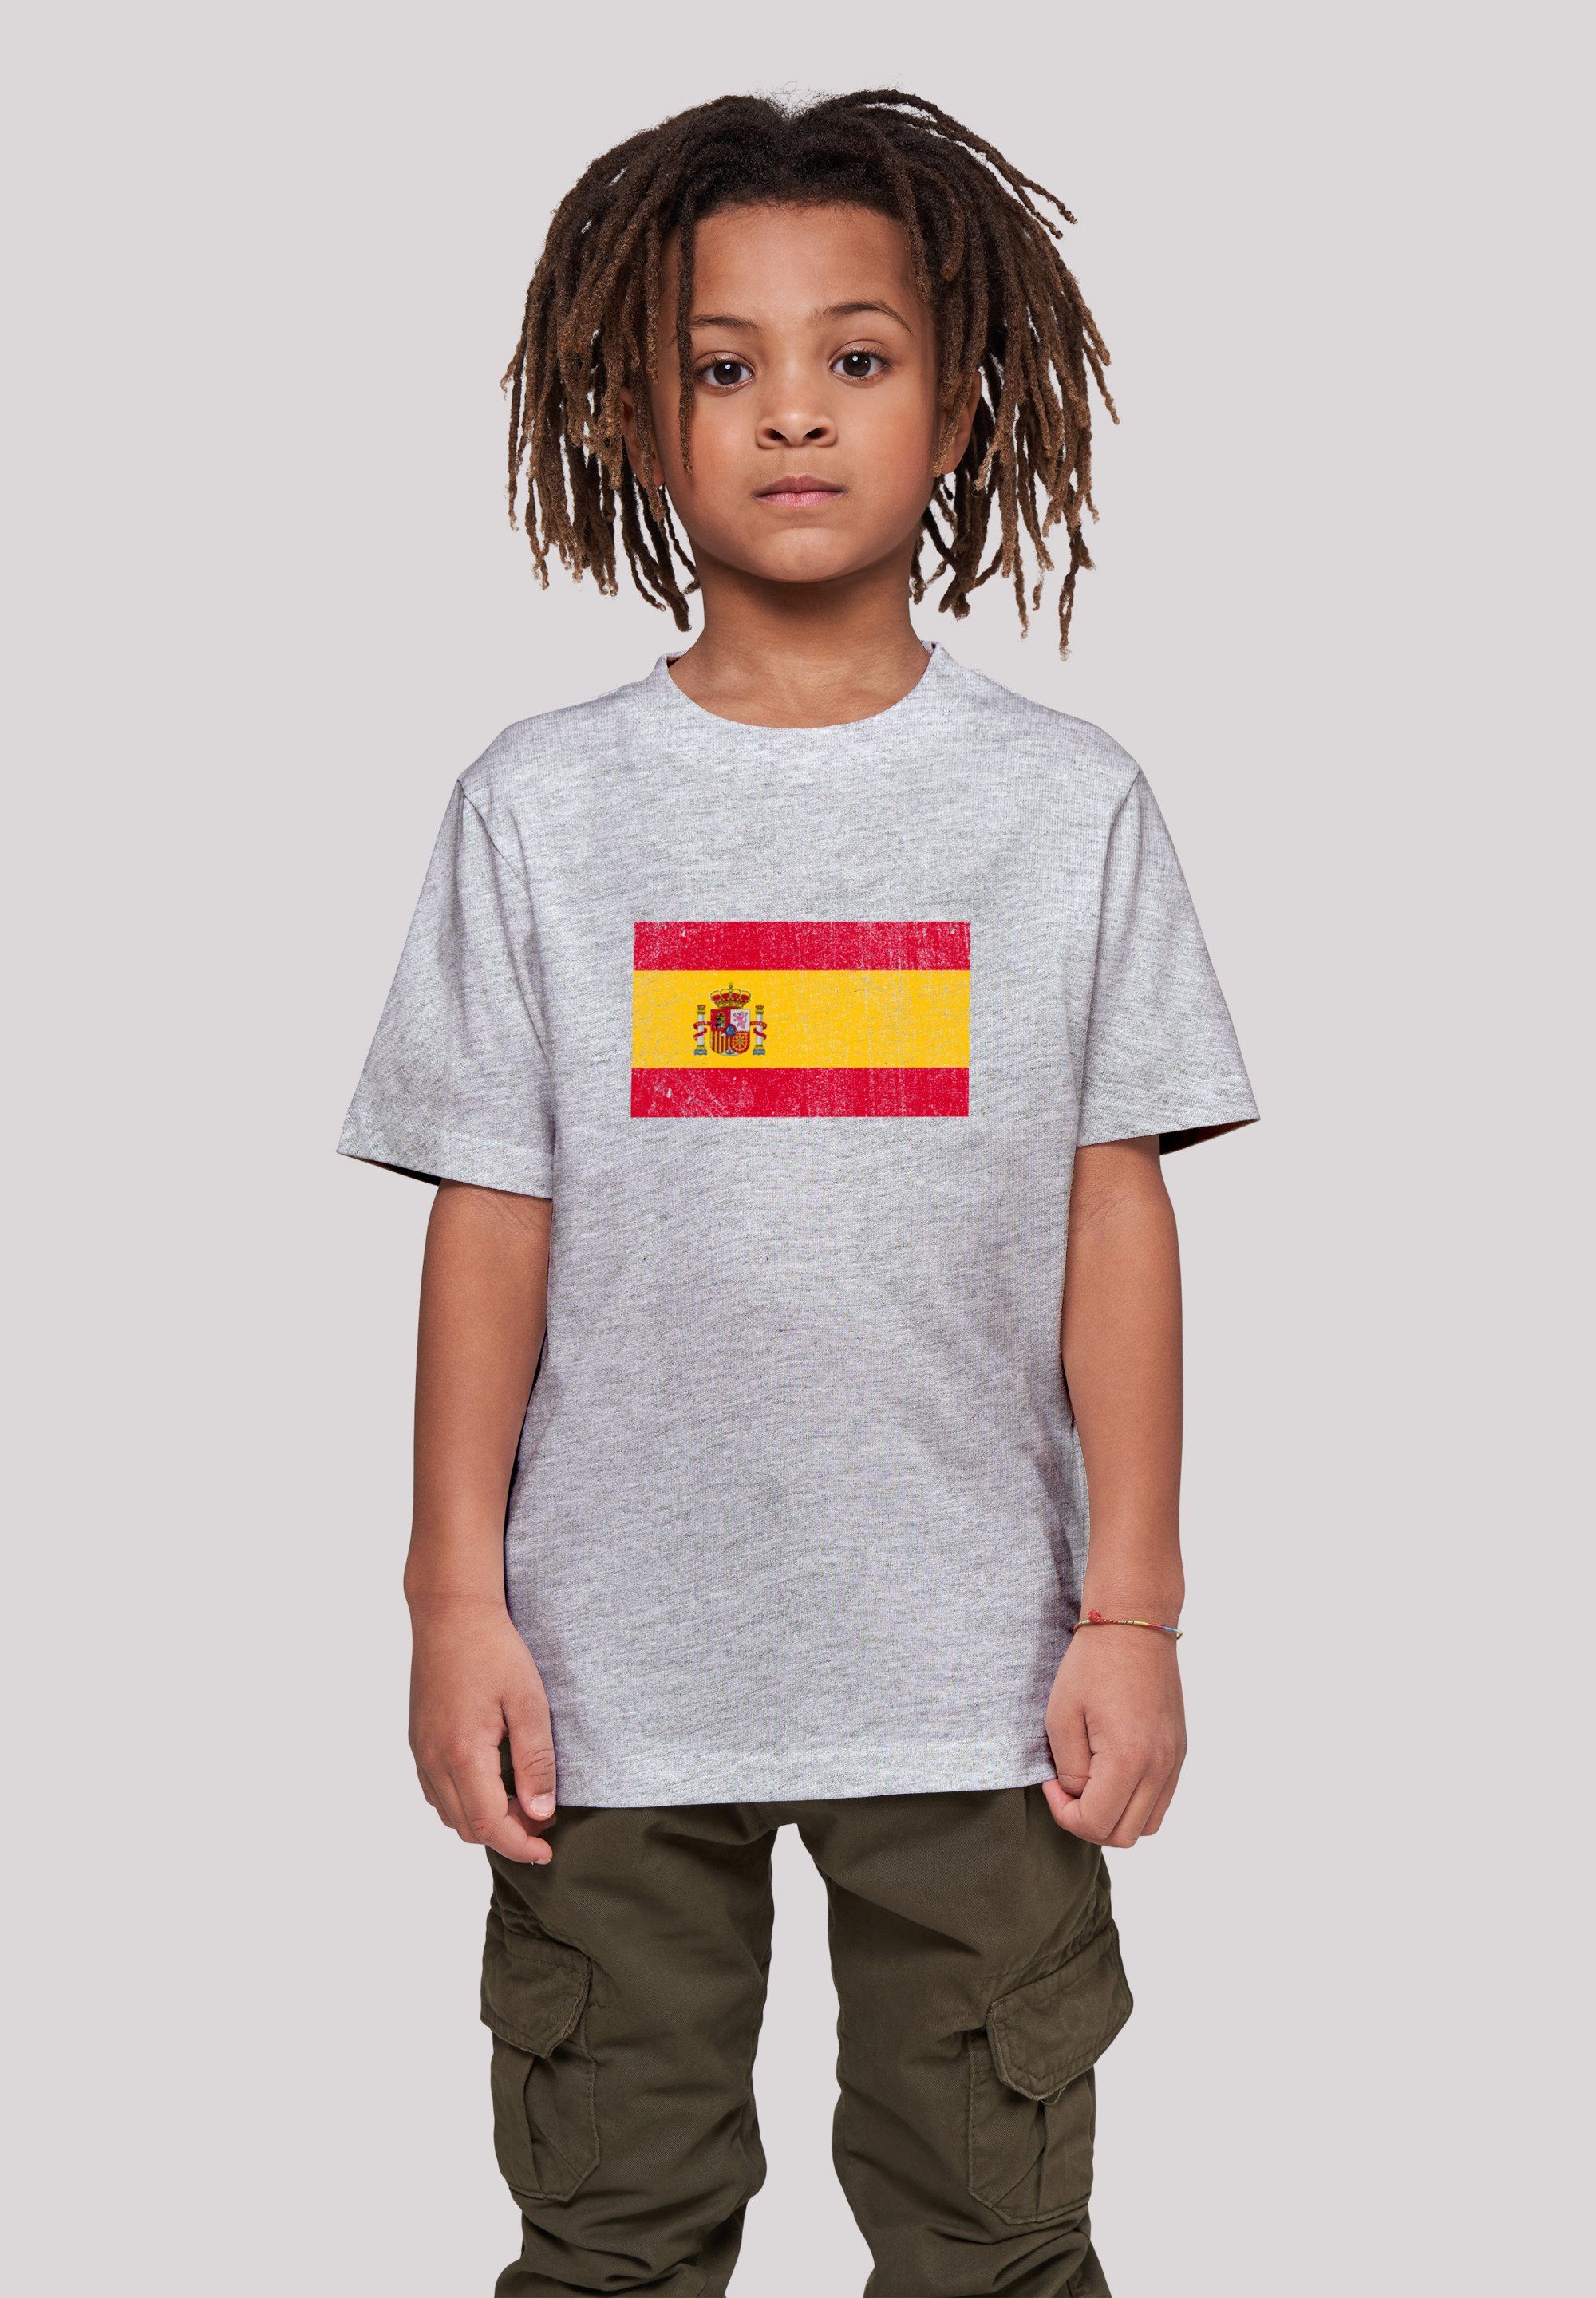 Spain und Print, Spanien Das ist Größe Flagge F4NT4STIC 145 T-Shirt 145/152 groß Model cm trägt distressed